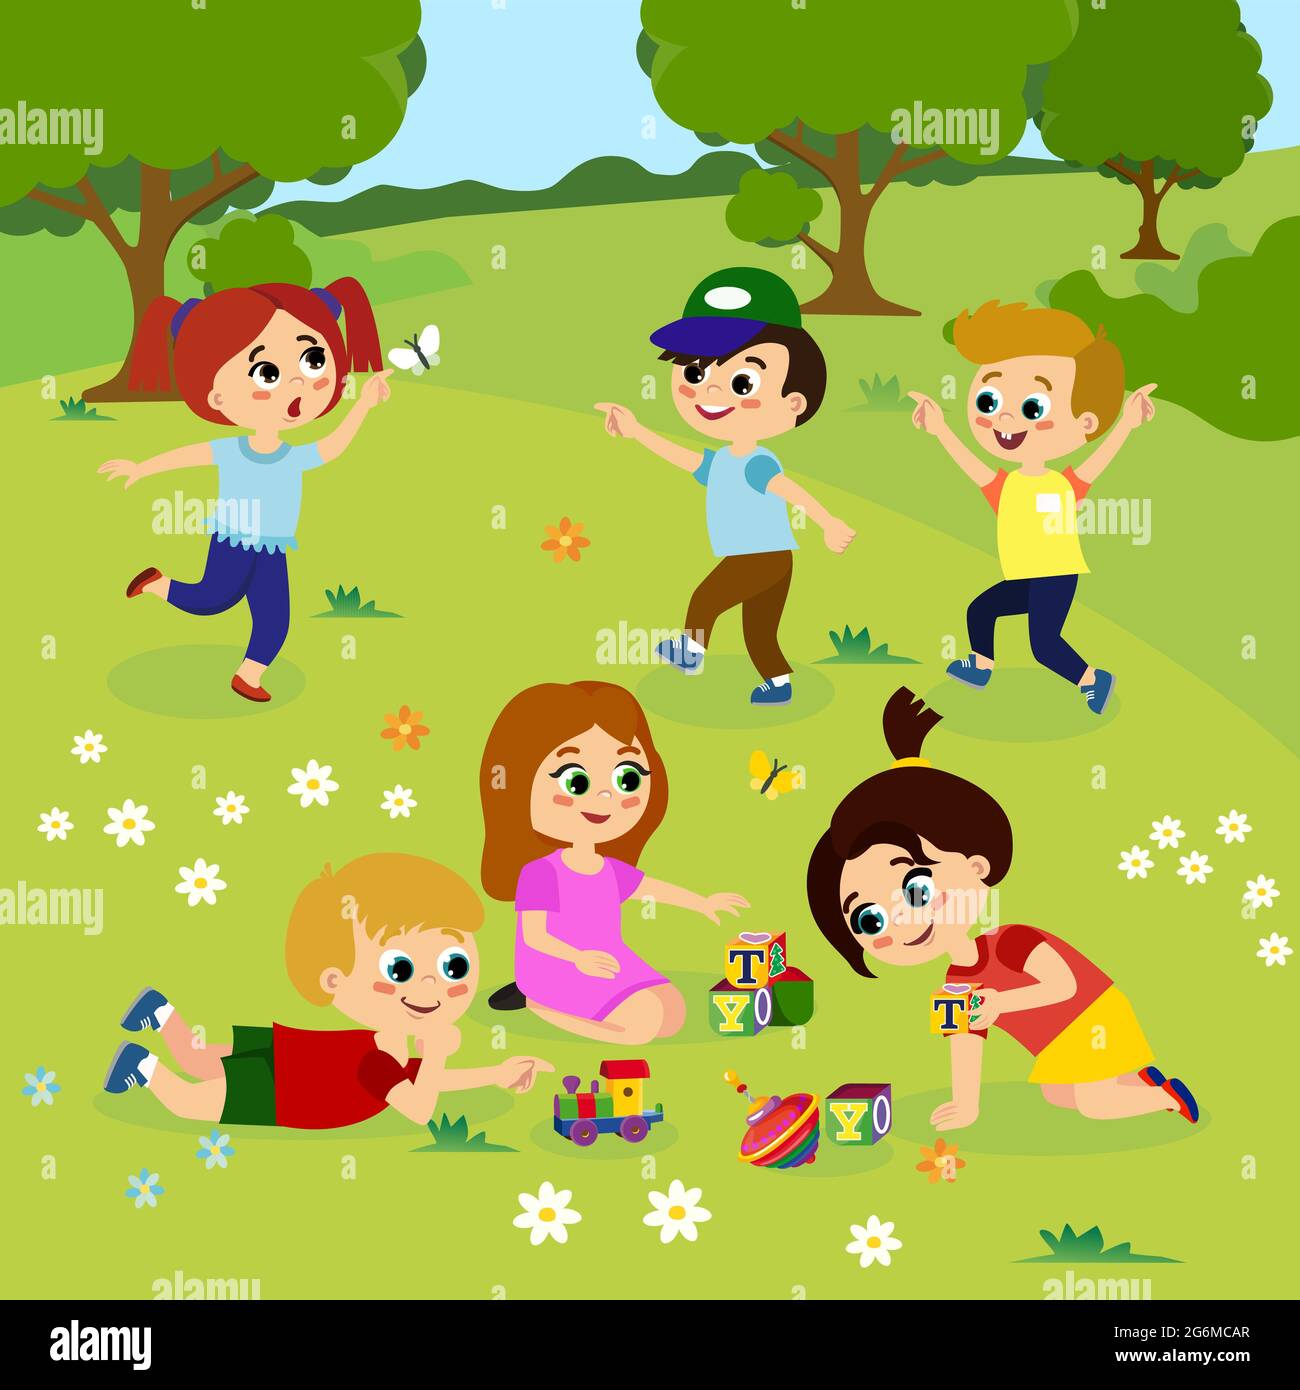 Vektor-Illustration von Kindern, die draußen auf grünem Gras mit Blumen, Bäumen spielen. Glückliche Kinder spielen auf dem Hof mit Spielzeug im Cartoon-Flat-Stil. Stock Vektor